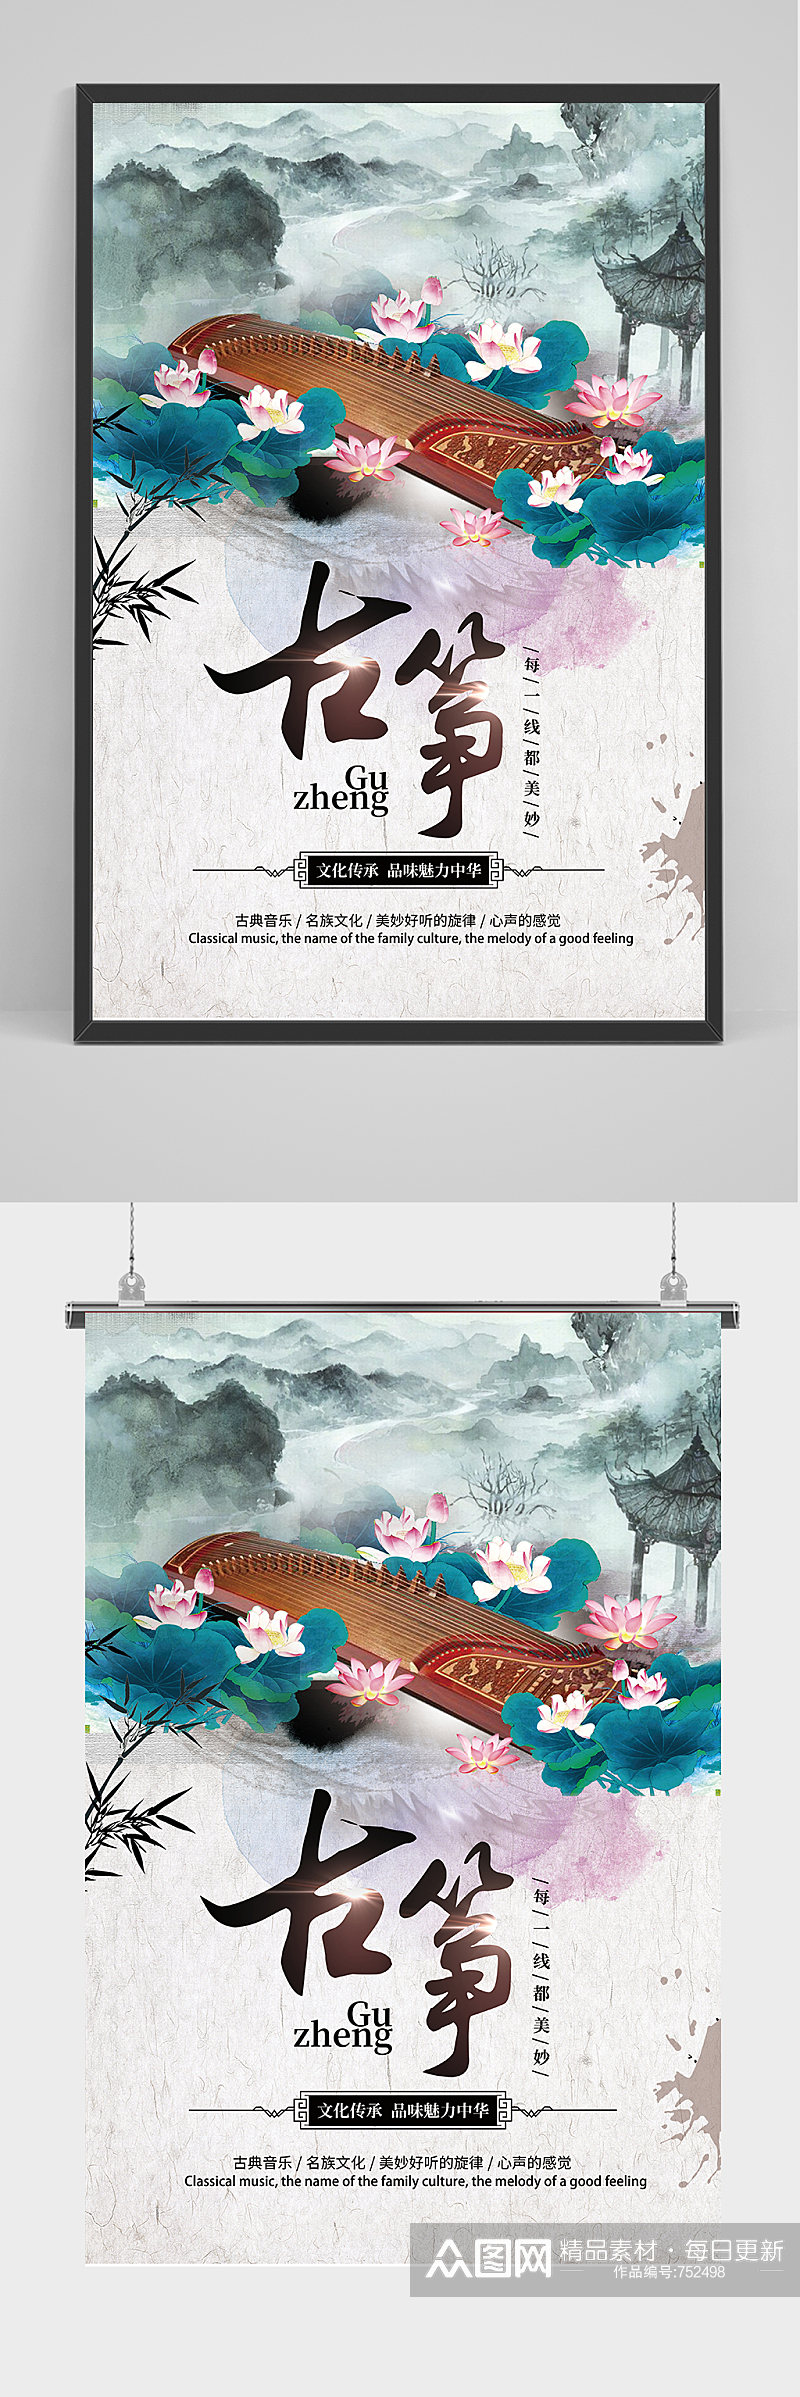 中国风古筝培训古典乐器招生海报素材